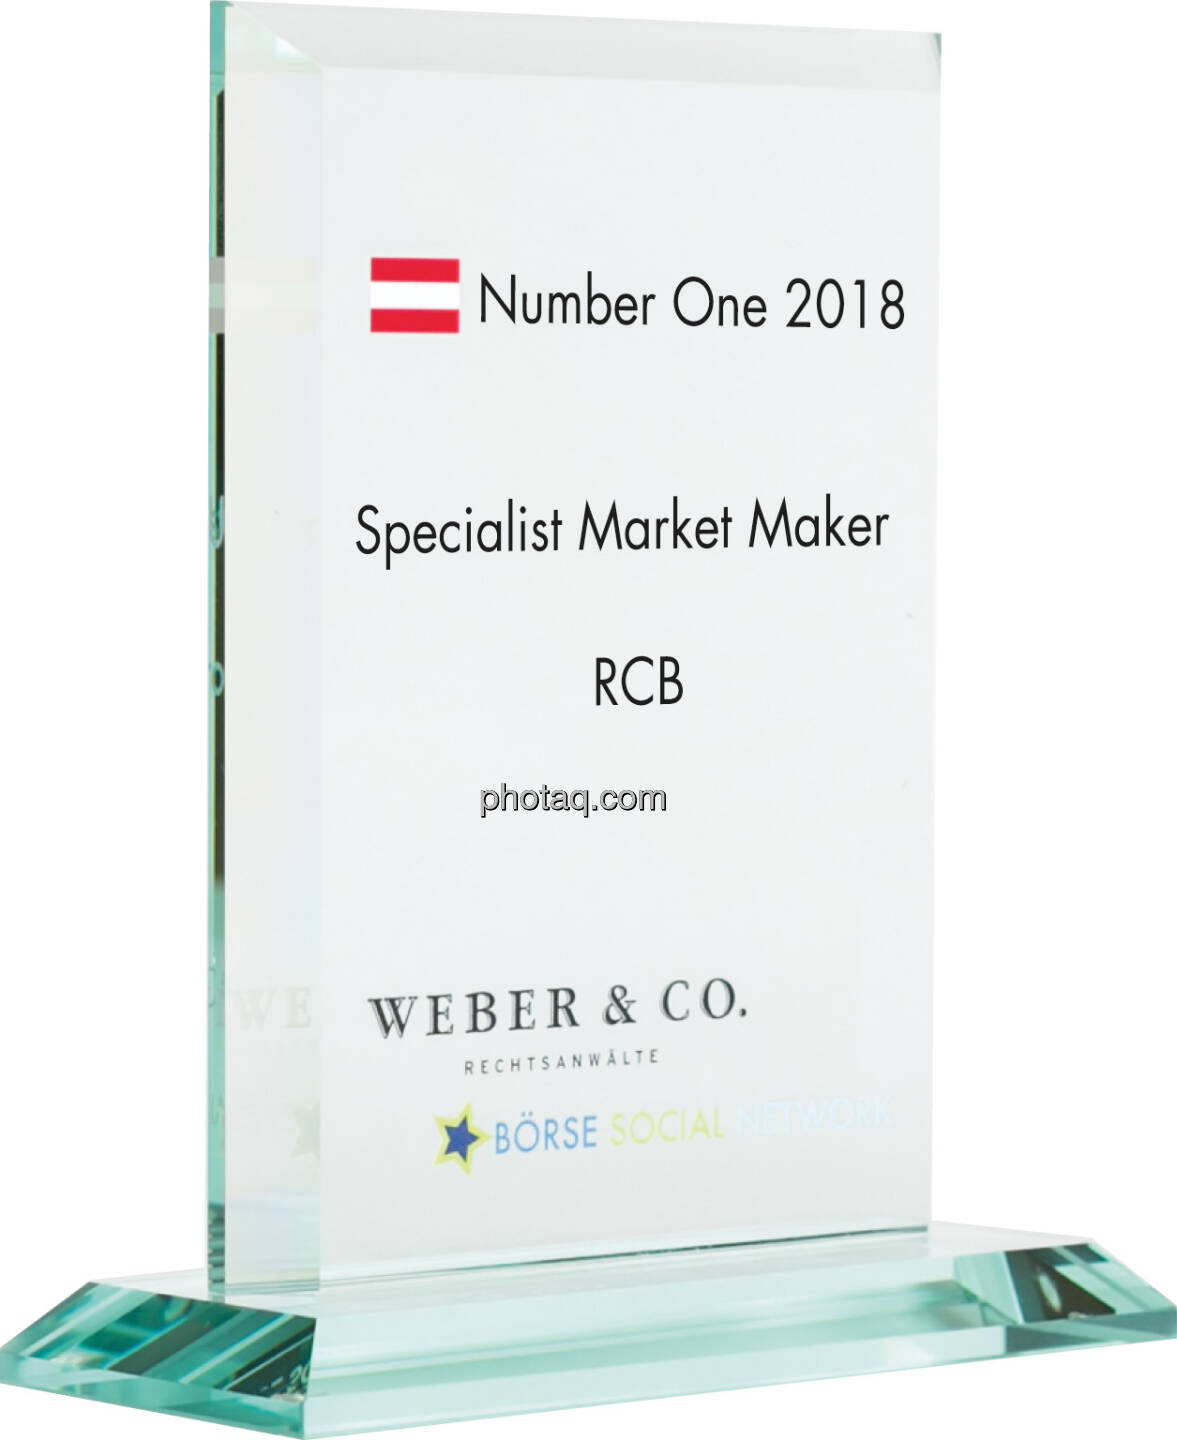 Number One Awards 2018 - Specialist Market Maker RCB